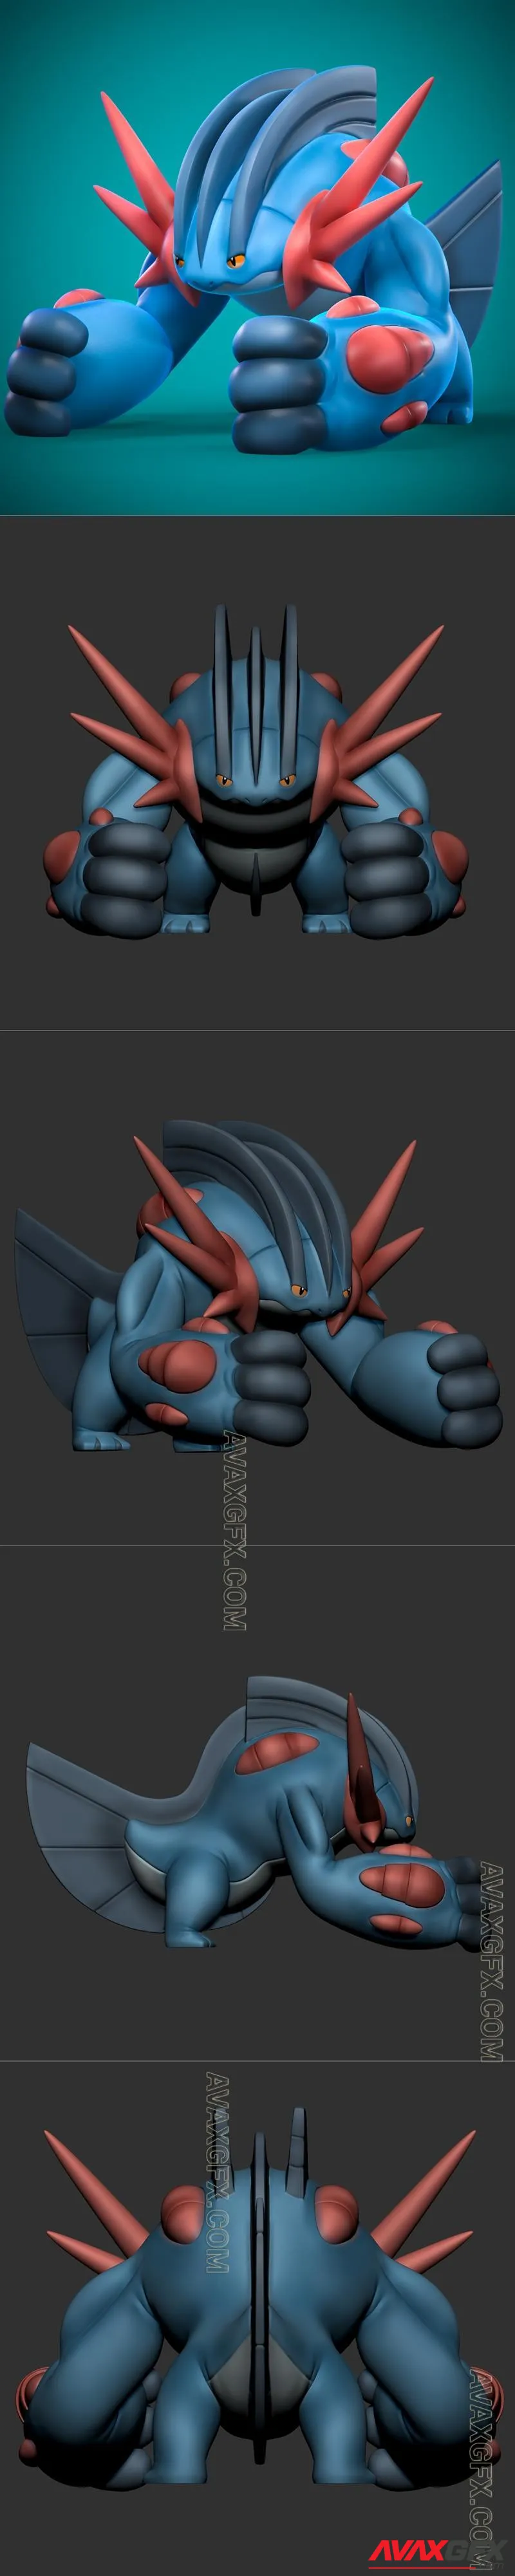 Megaswampert Pokemon - STL 3D Model